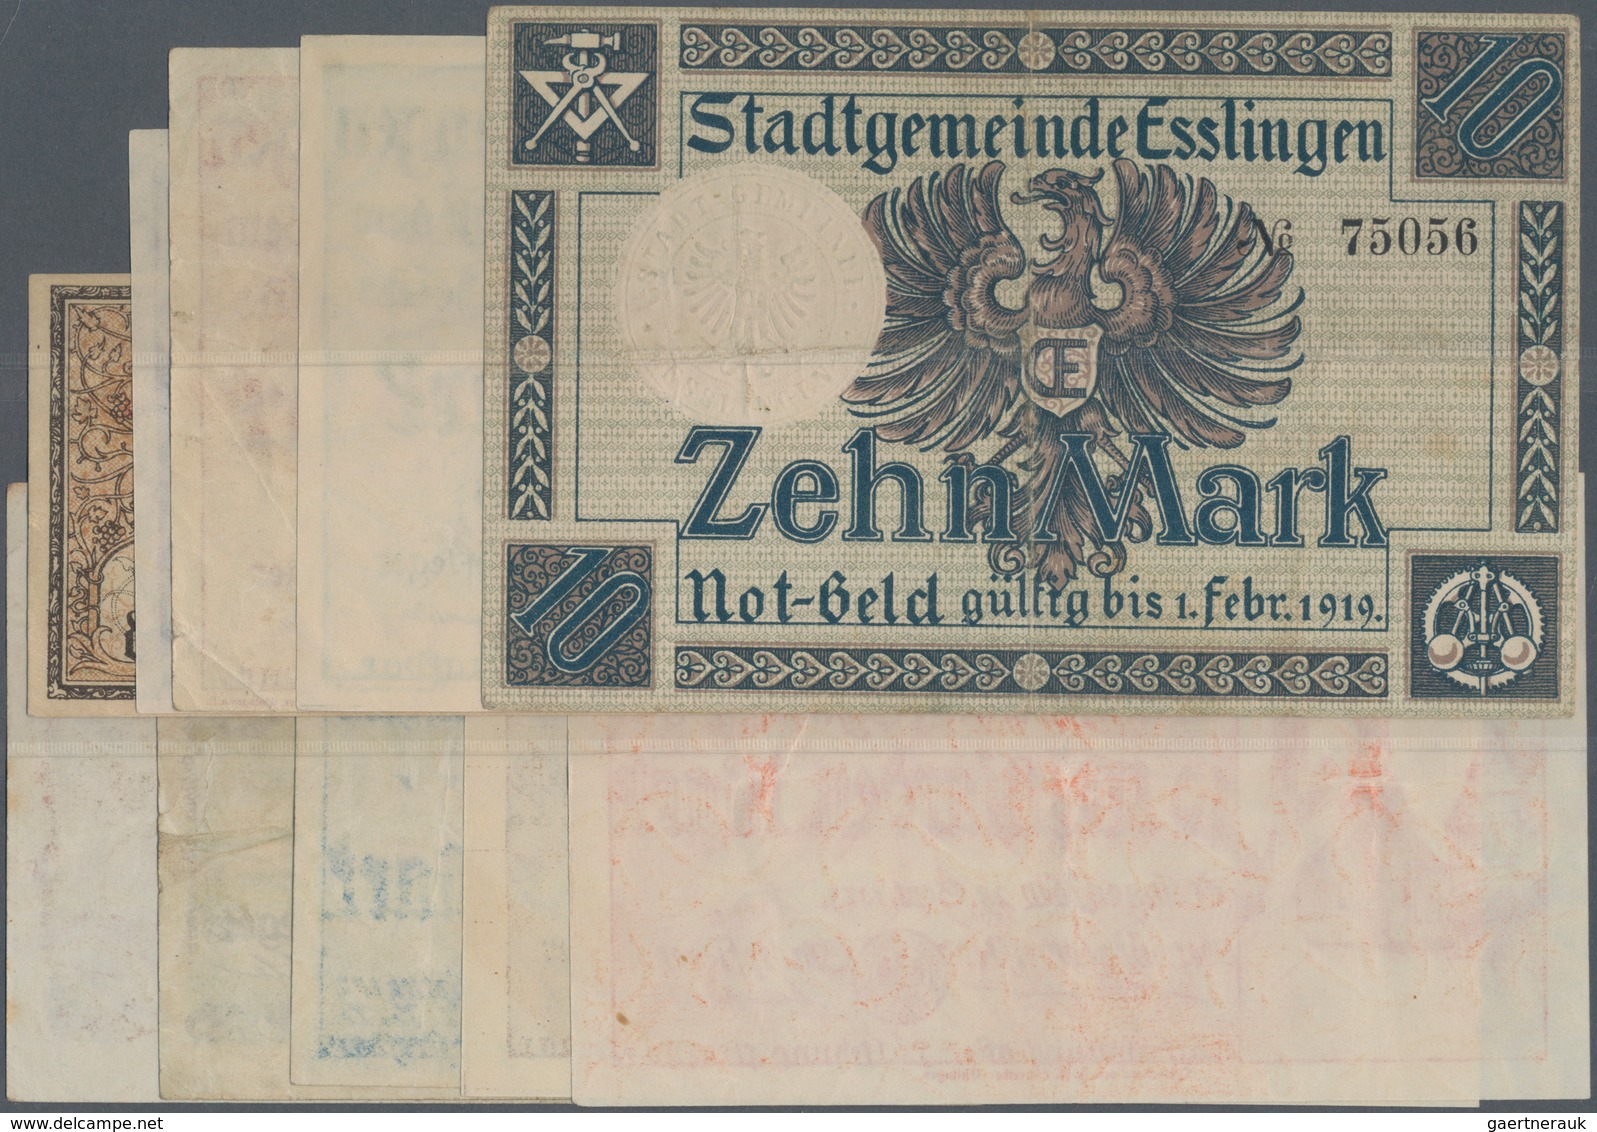 Deutschland - Notgeld - Württemberg: Esslingen, Stadt, 10 Mark, 1.11.1918; 500 Tsd., 1 Mio. Mark, 27 - [11] Lokale Uitgaven